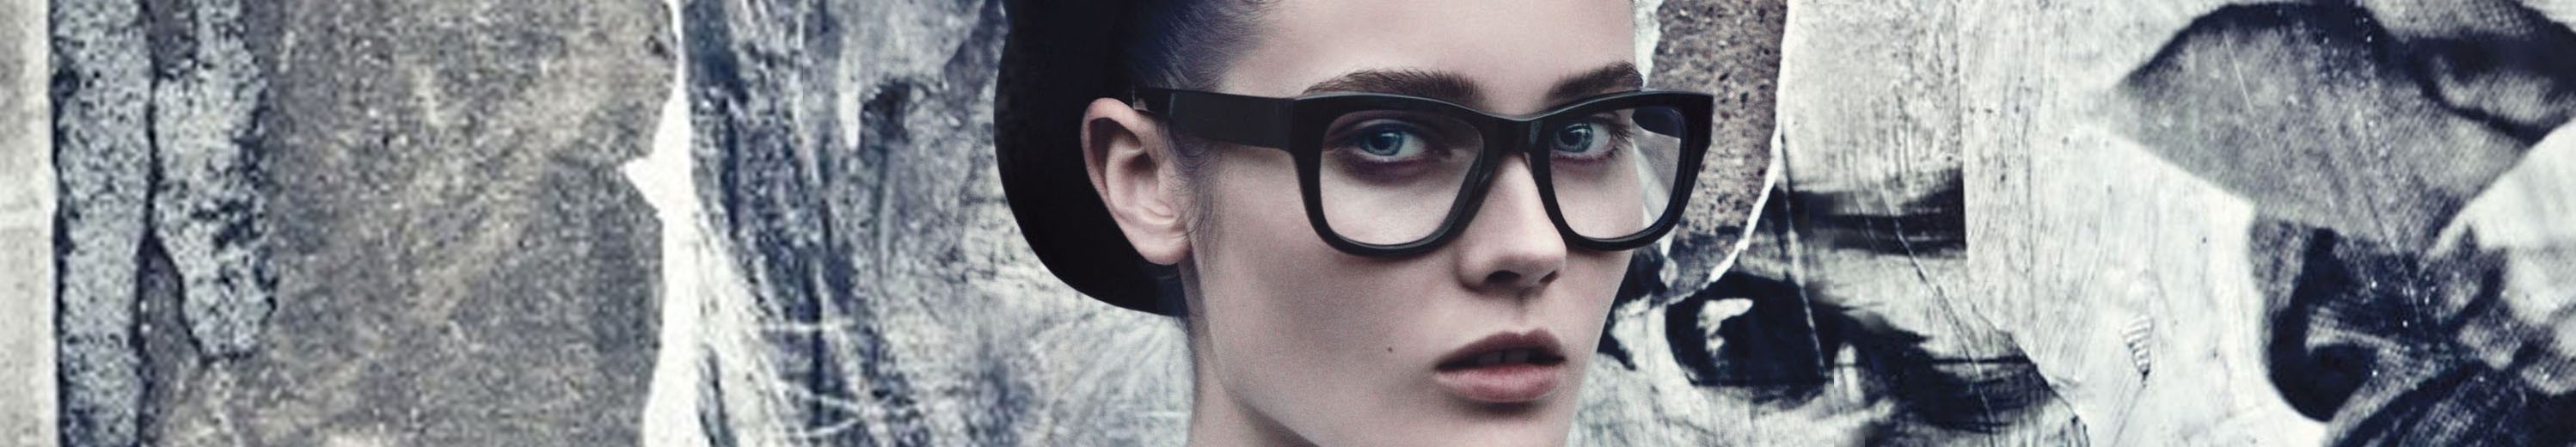 Wayfarer Eyeglasses for Women